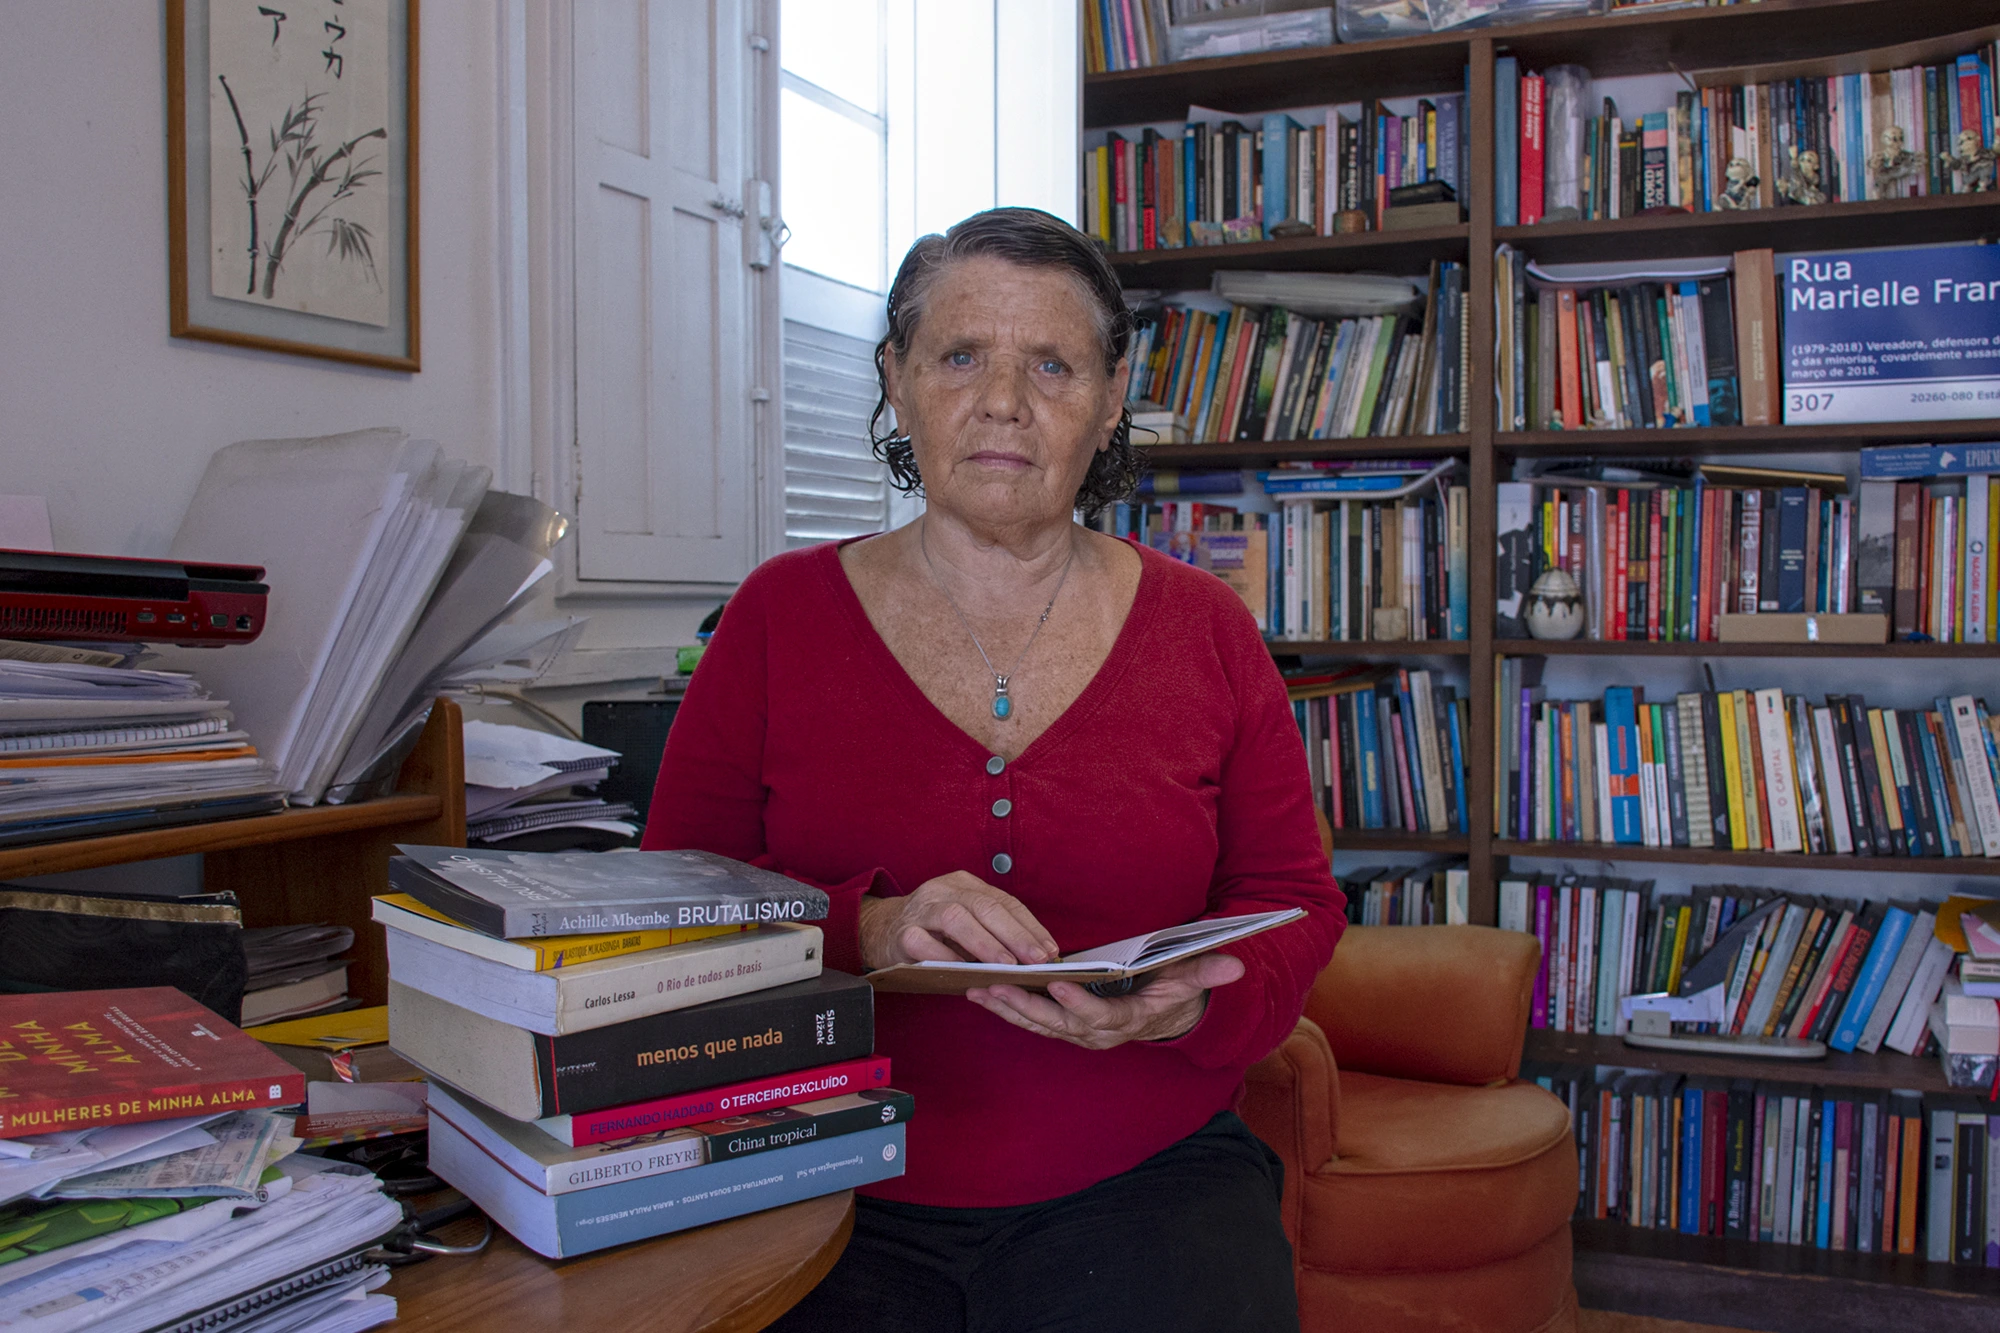 Uma entrevista especial com a sanitarista Lúcia Souto sobre o legado das lutas pela saúde pública no Brasil